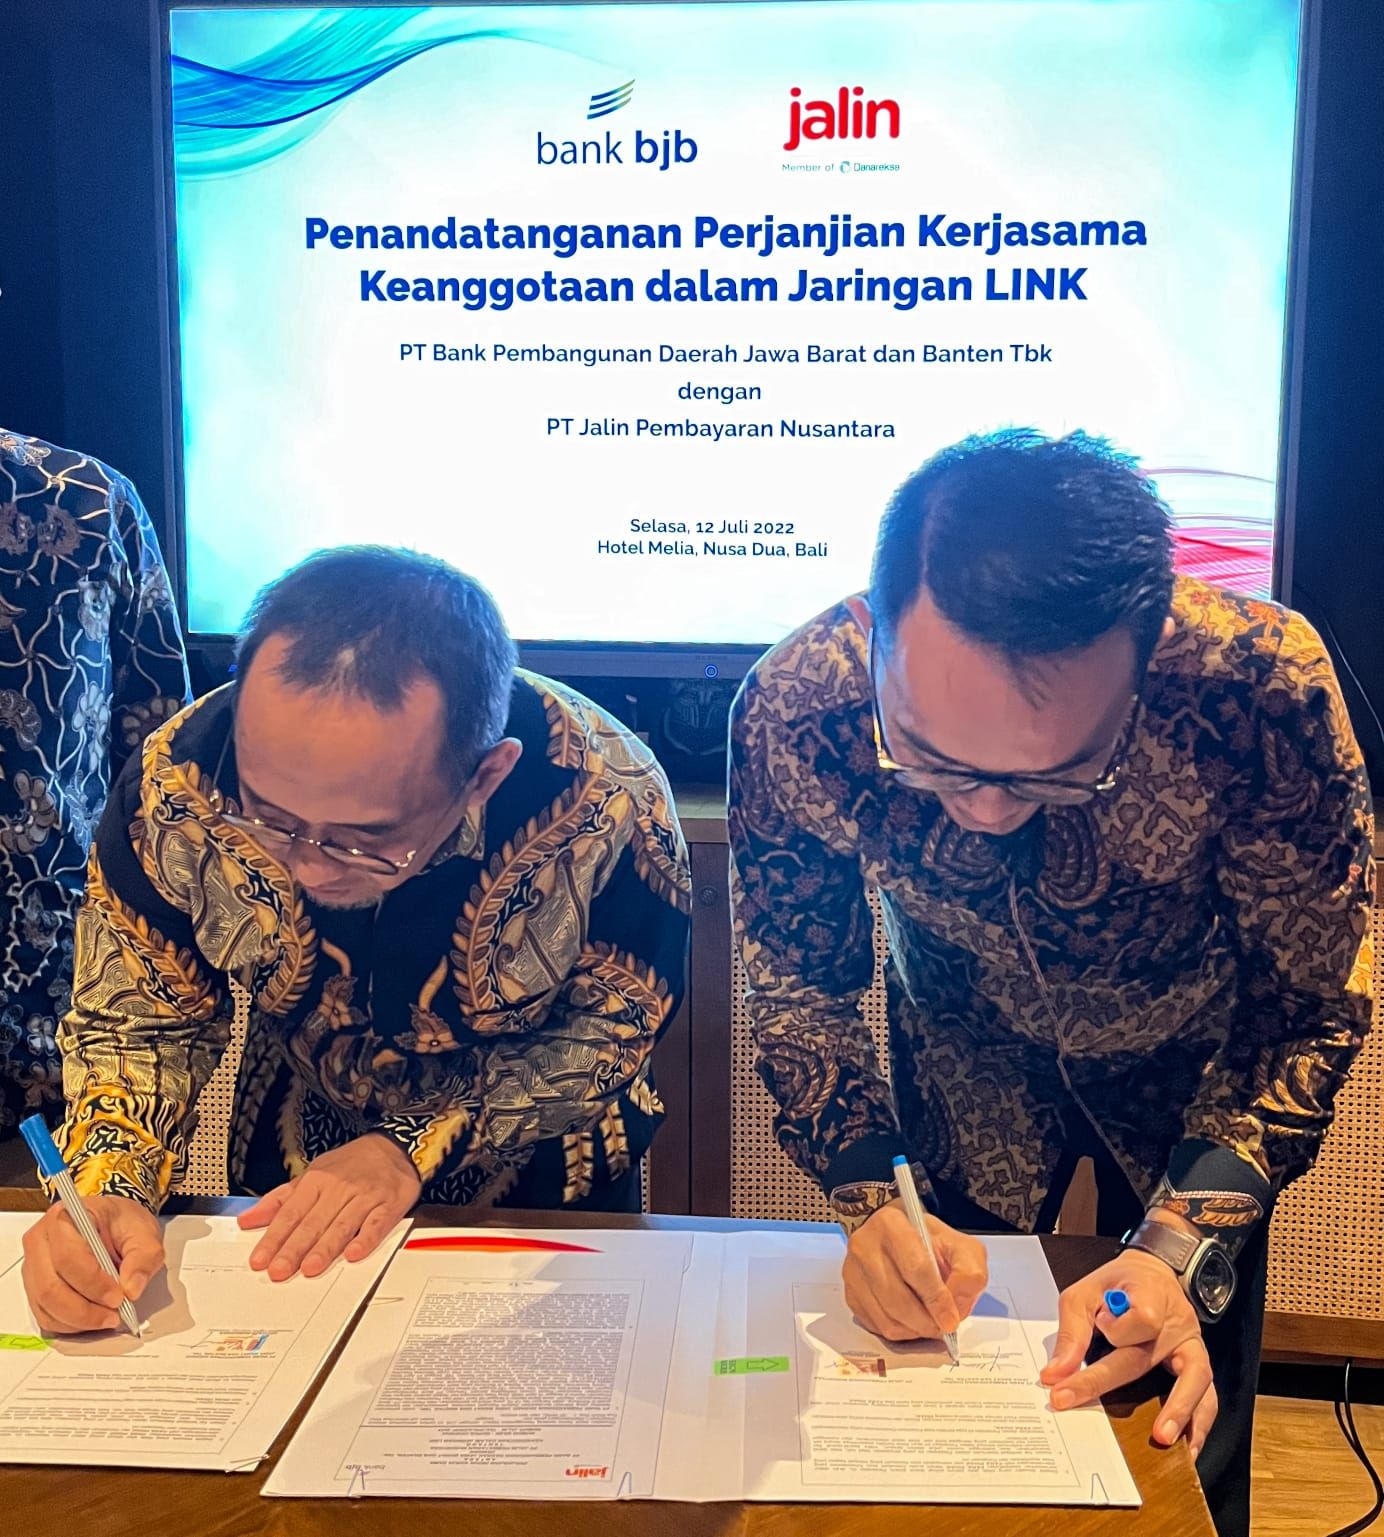 Penandatanganan perjanjian kerja sama keanggotaan dalam jaringan LINK antara bank bjb dan Jalin.